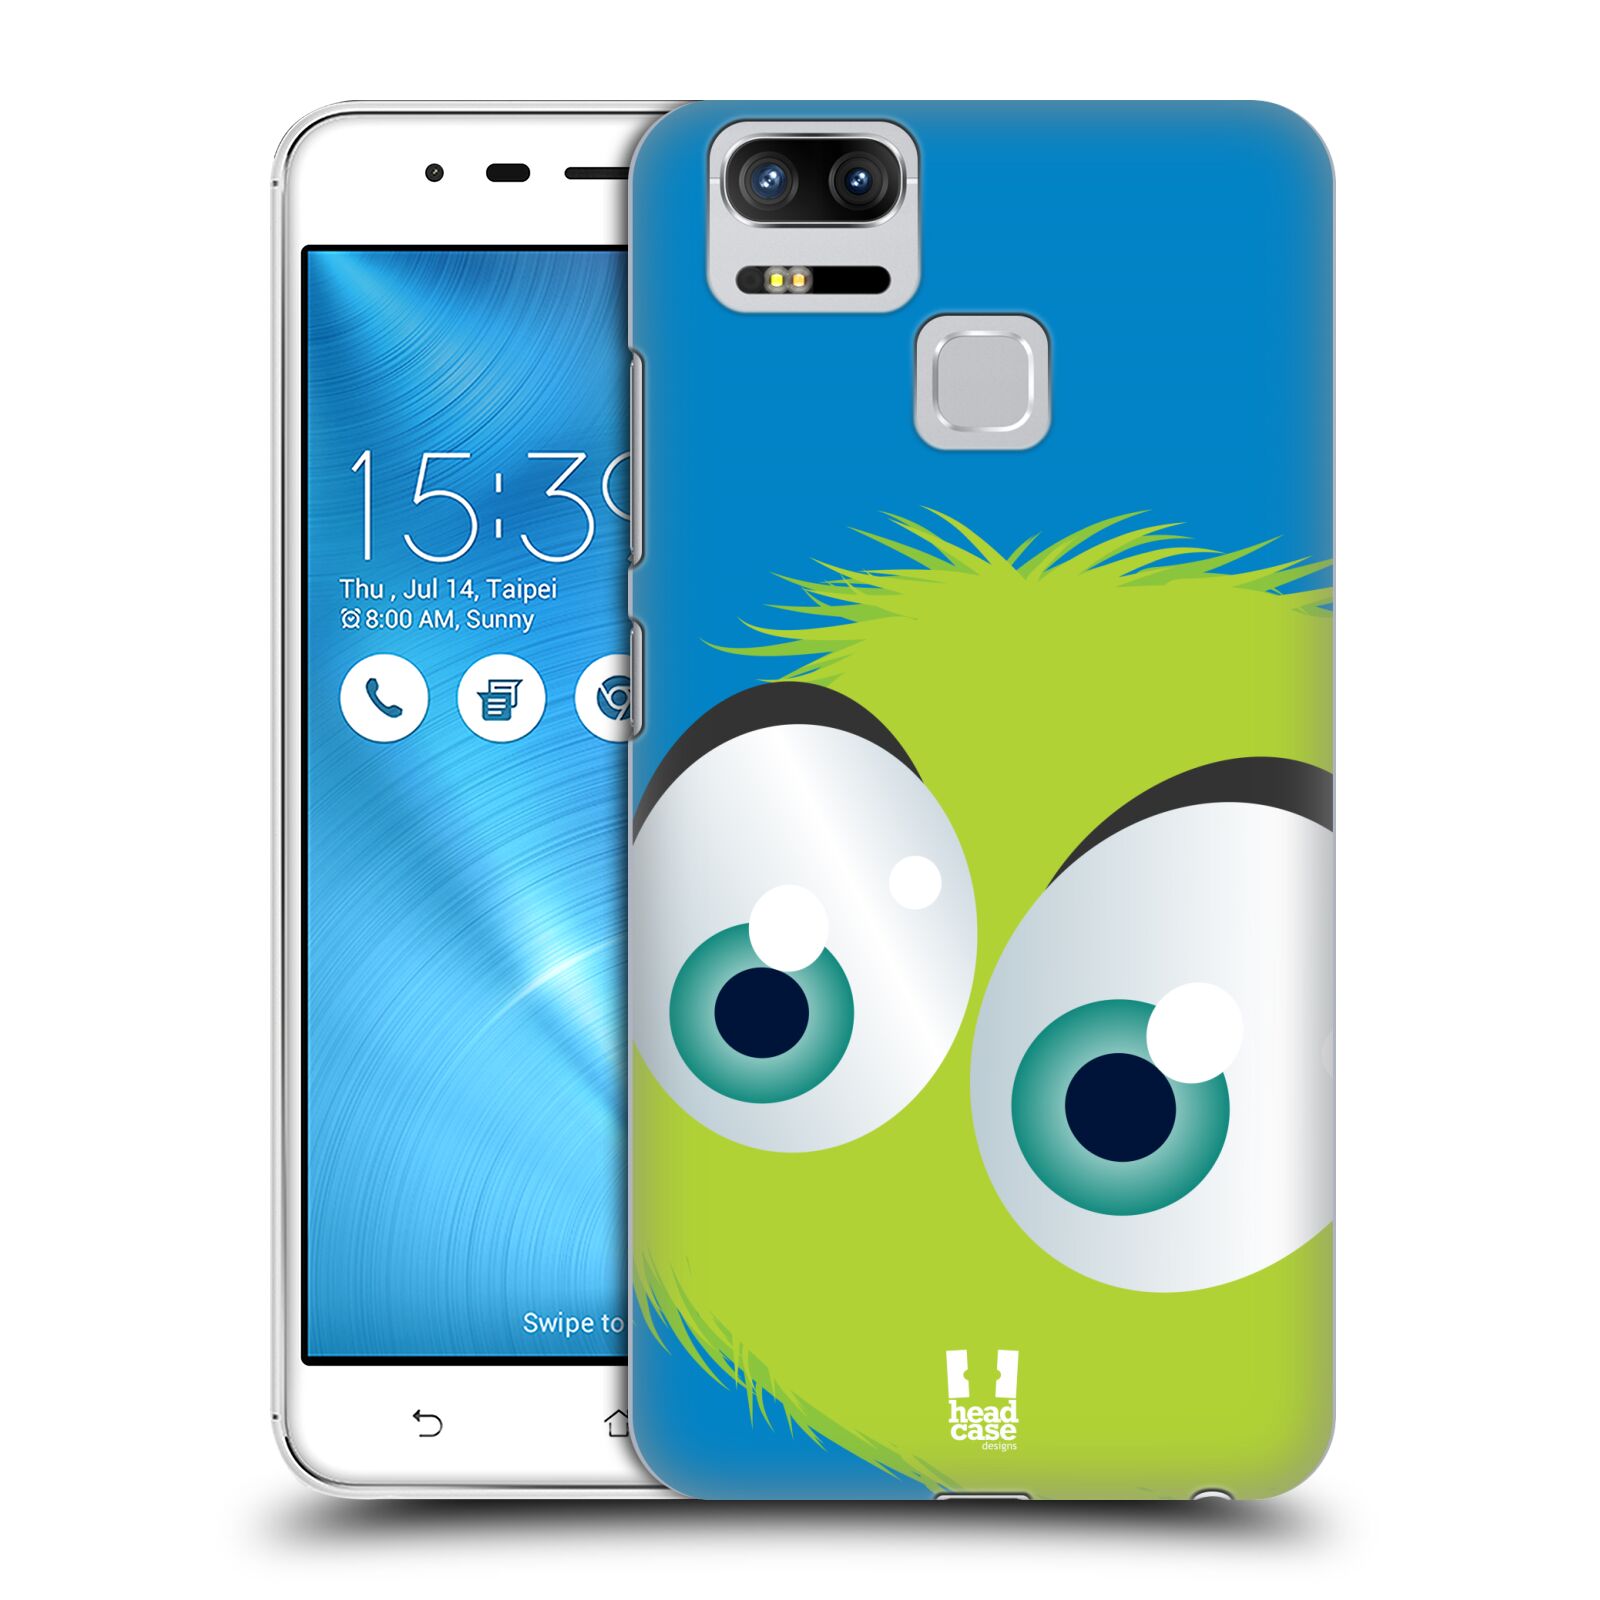 HEAD CASE plastový obal na mobil Asus Zenfone 3 Zoom ZE553KL vzor Barevný chlupatý smajlík ZELENÁ modré pozadí